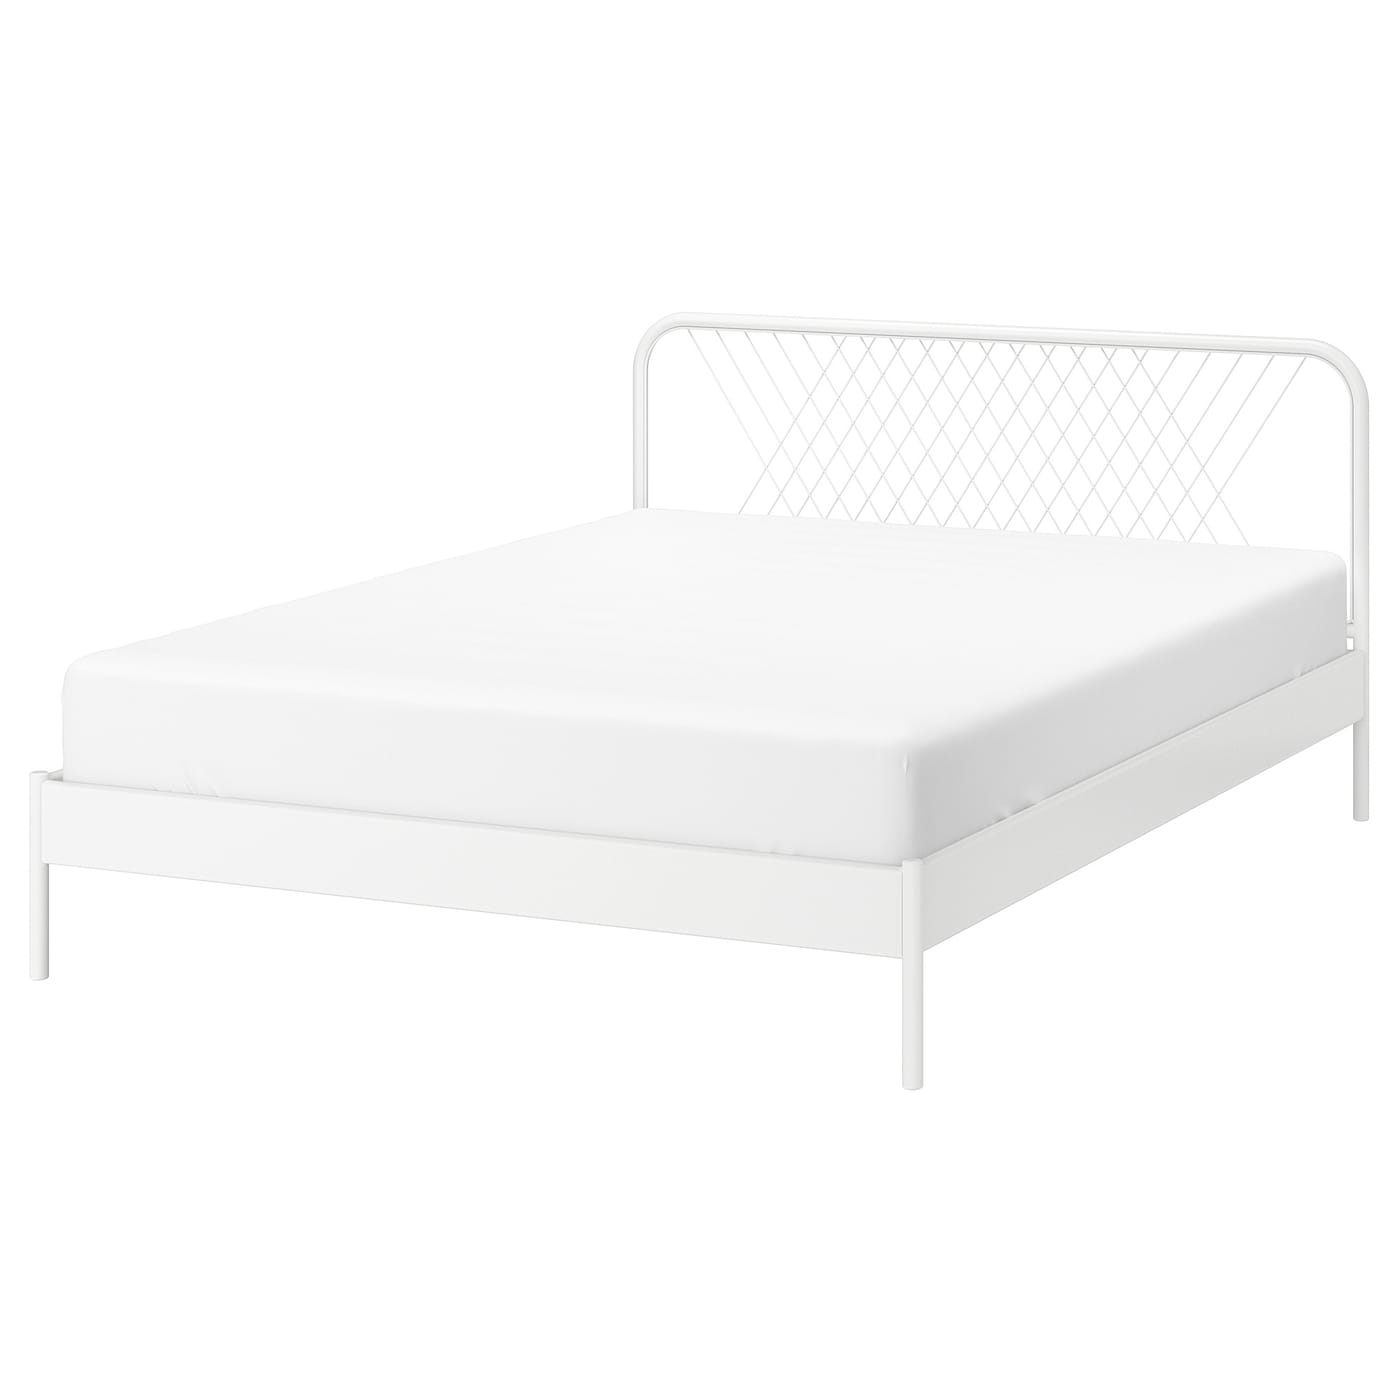 Каркас кровати - IKEA NESTTUN/LURÖY/LUROY, 200х160 см, белый, НЕСТТУН/ЛУРОЙ ИКЕА